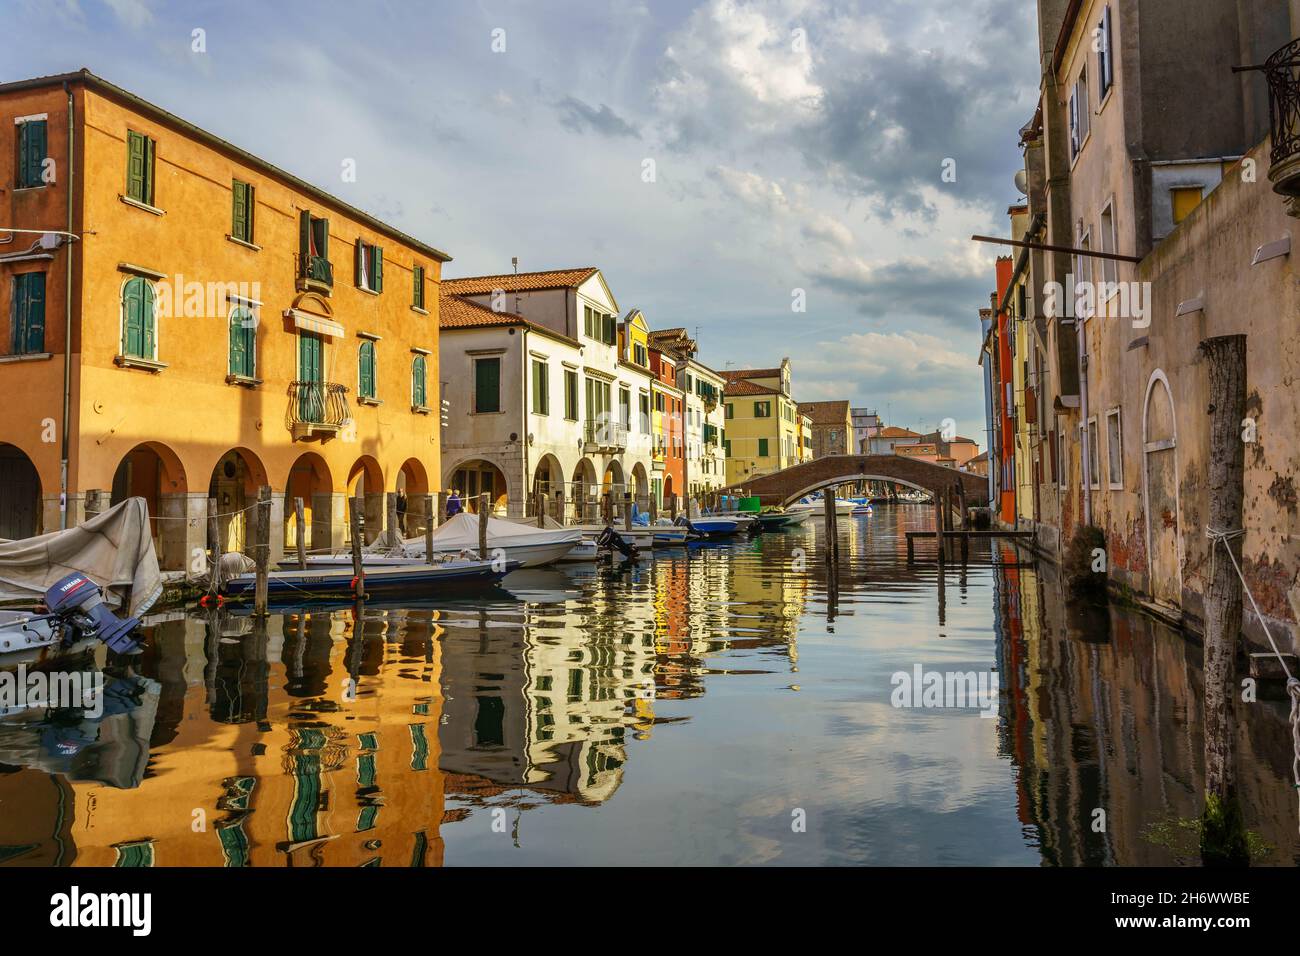 Vista sulla pittoresca cittadina di Comacchio, con edifici e canali, come la Venezia più famosa Foto Stock